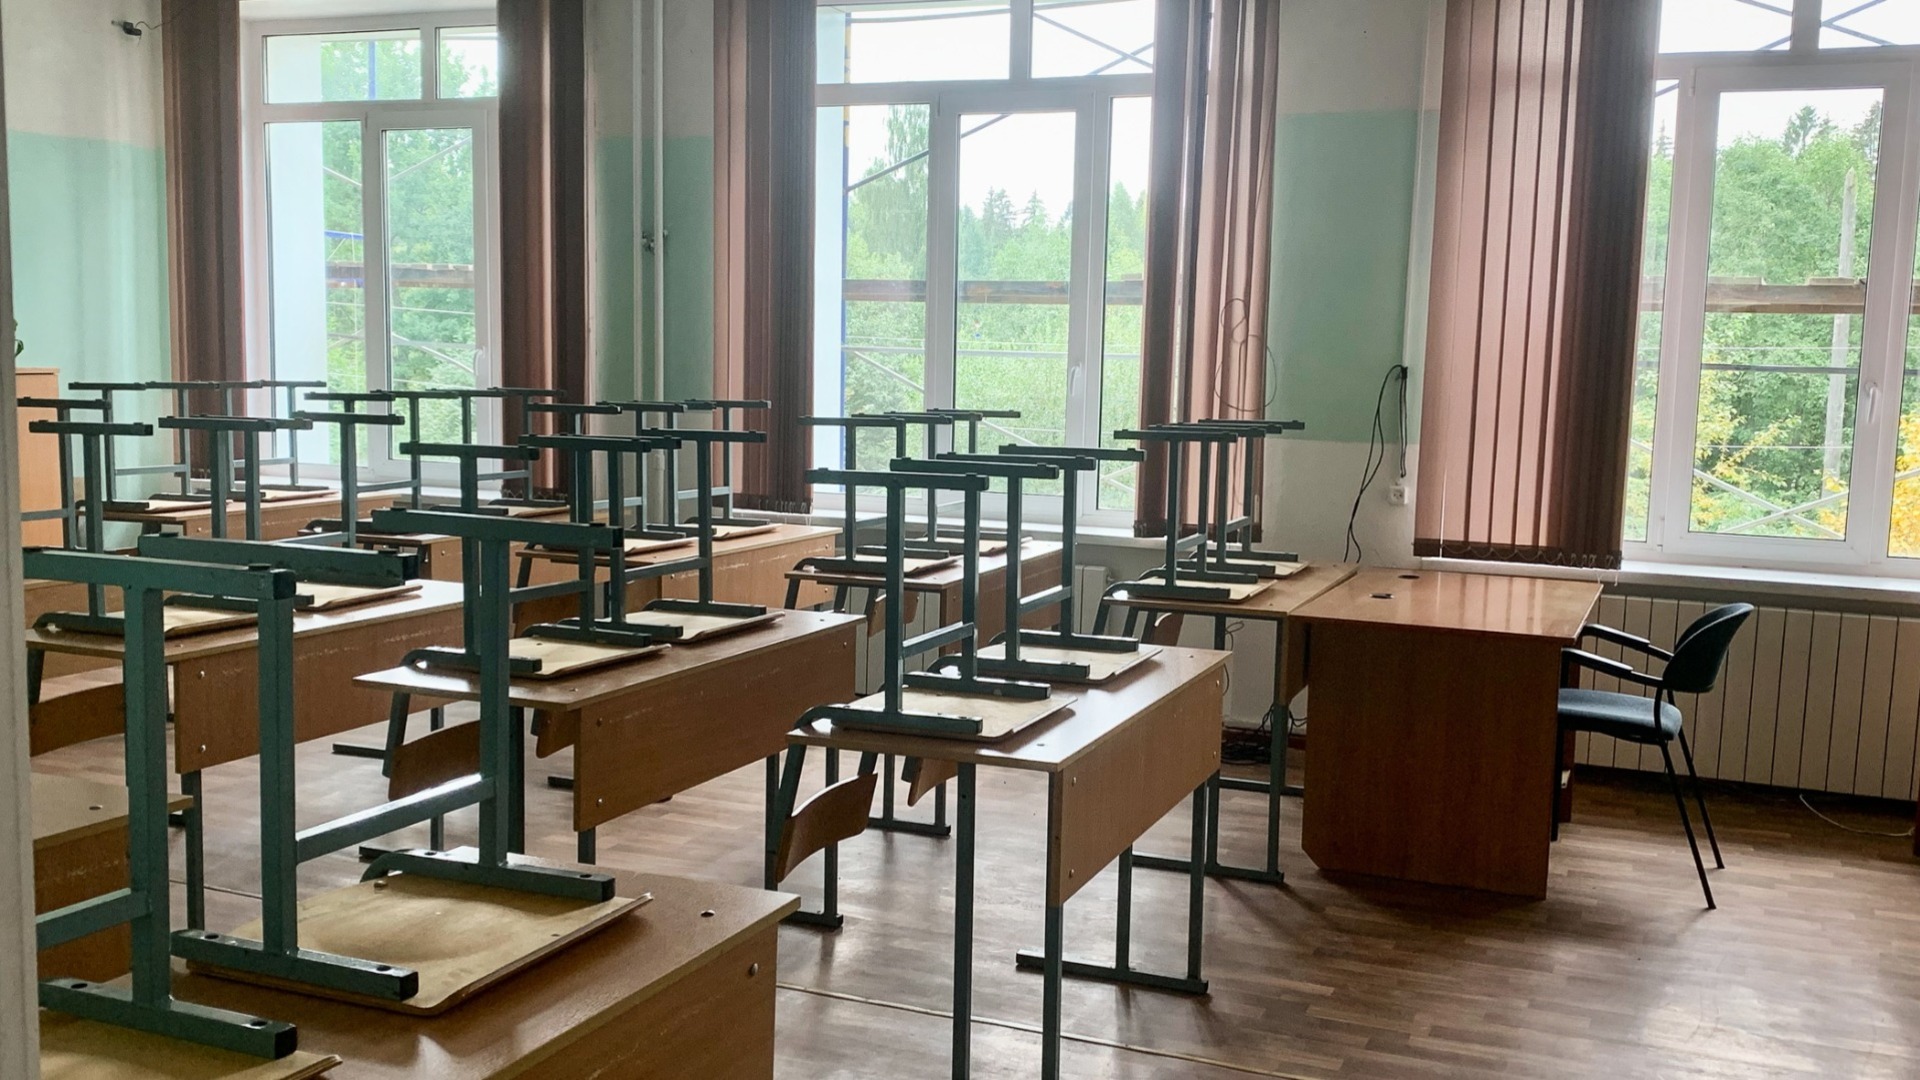 Дефицита мест в школах Нижнего Новгорода нет